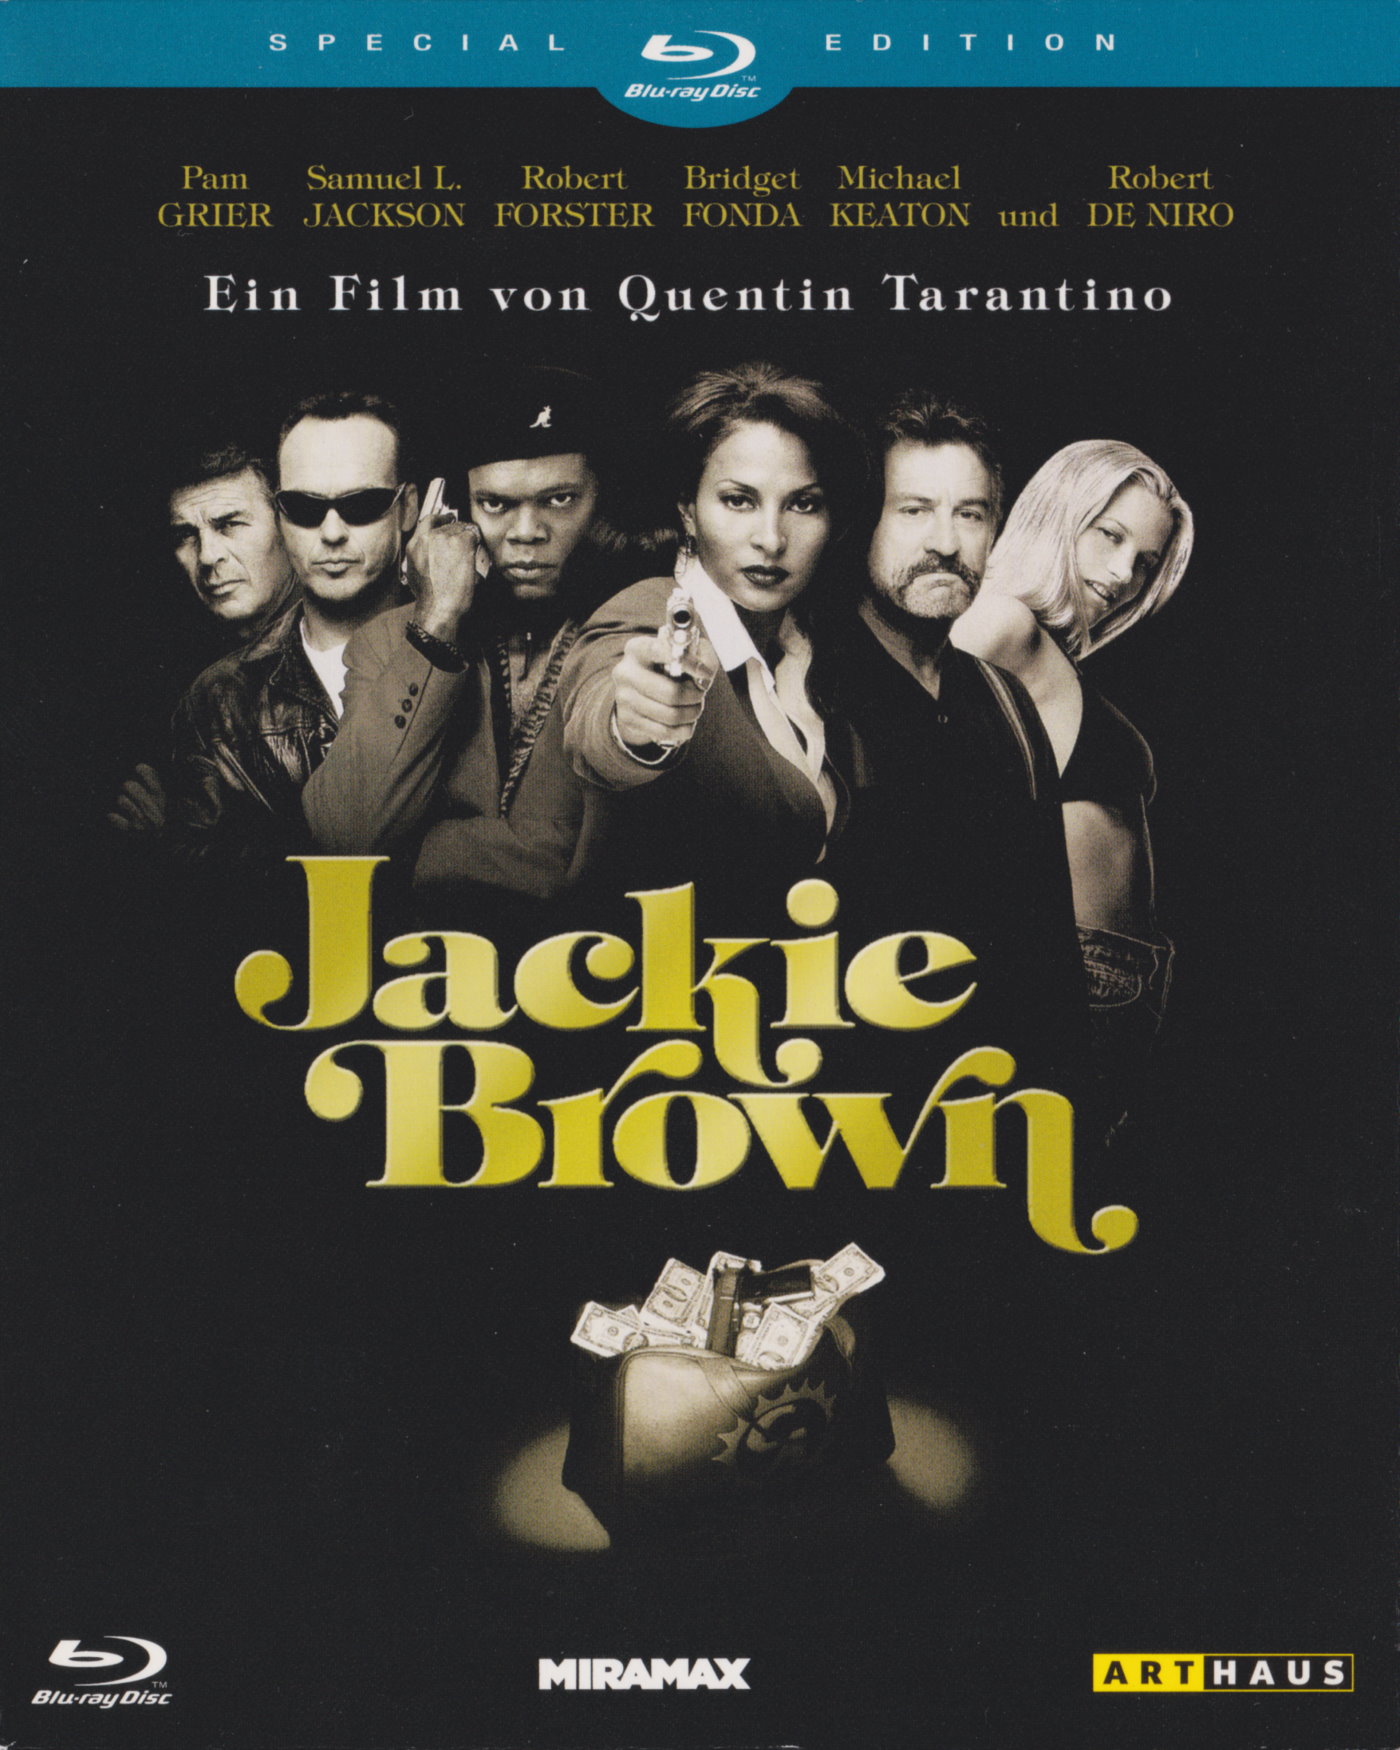 Cover - Jackie Brown.jpg